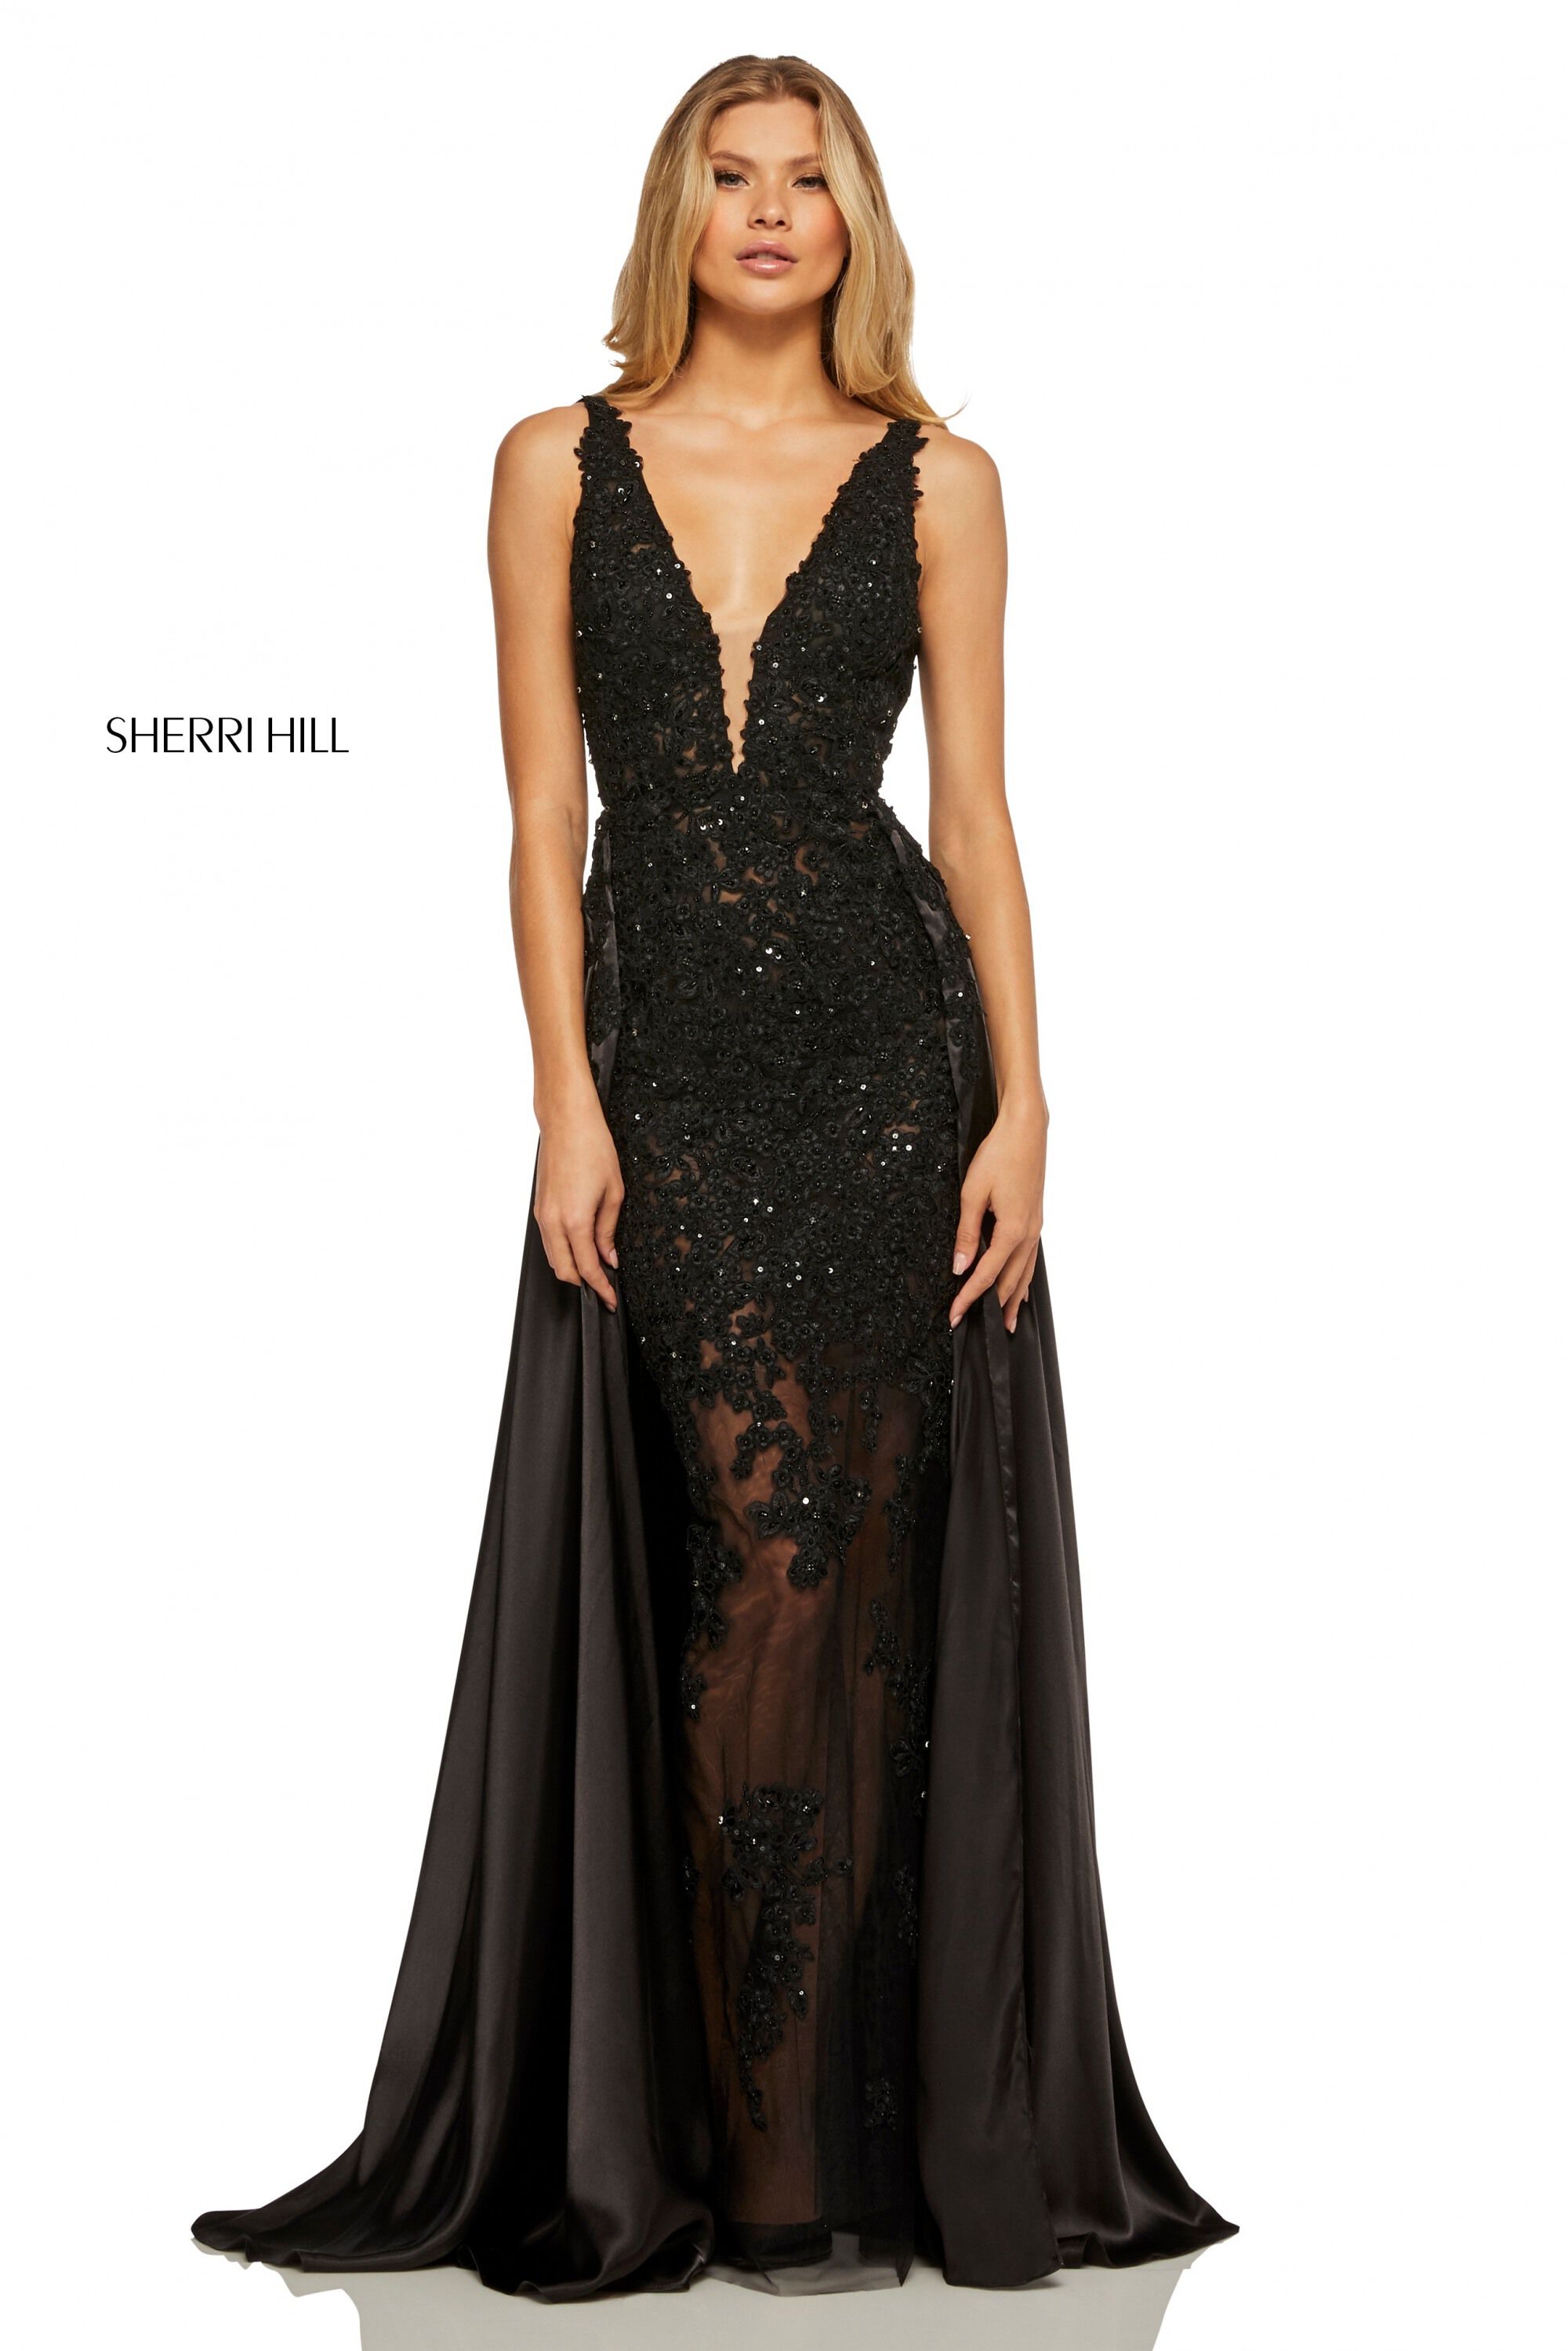 sherri hill black dress